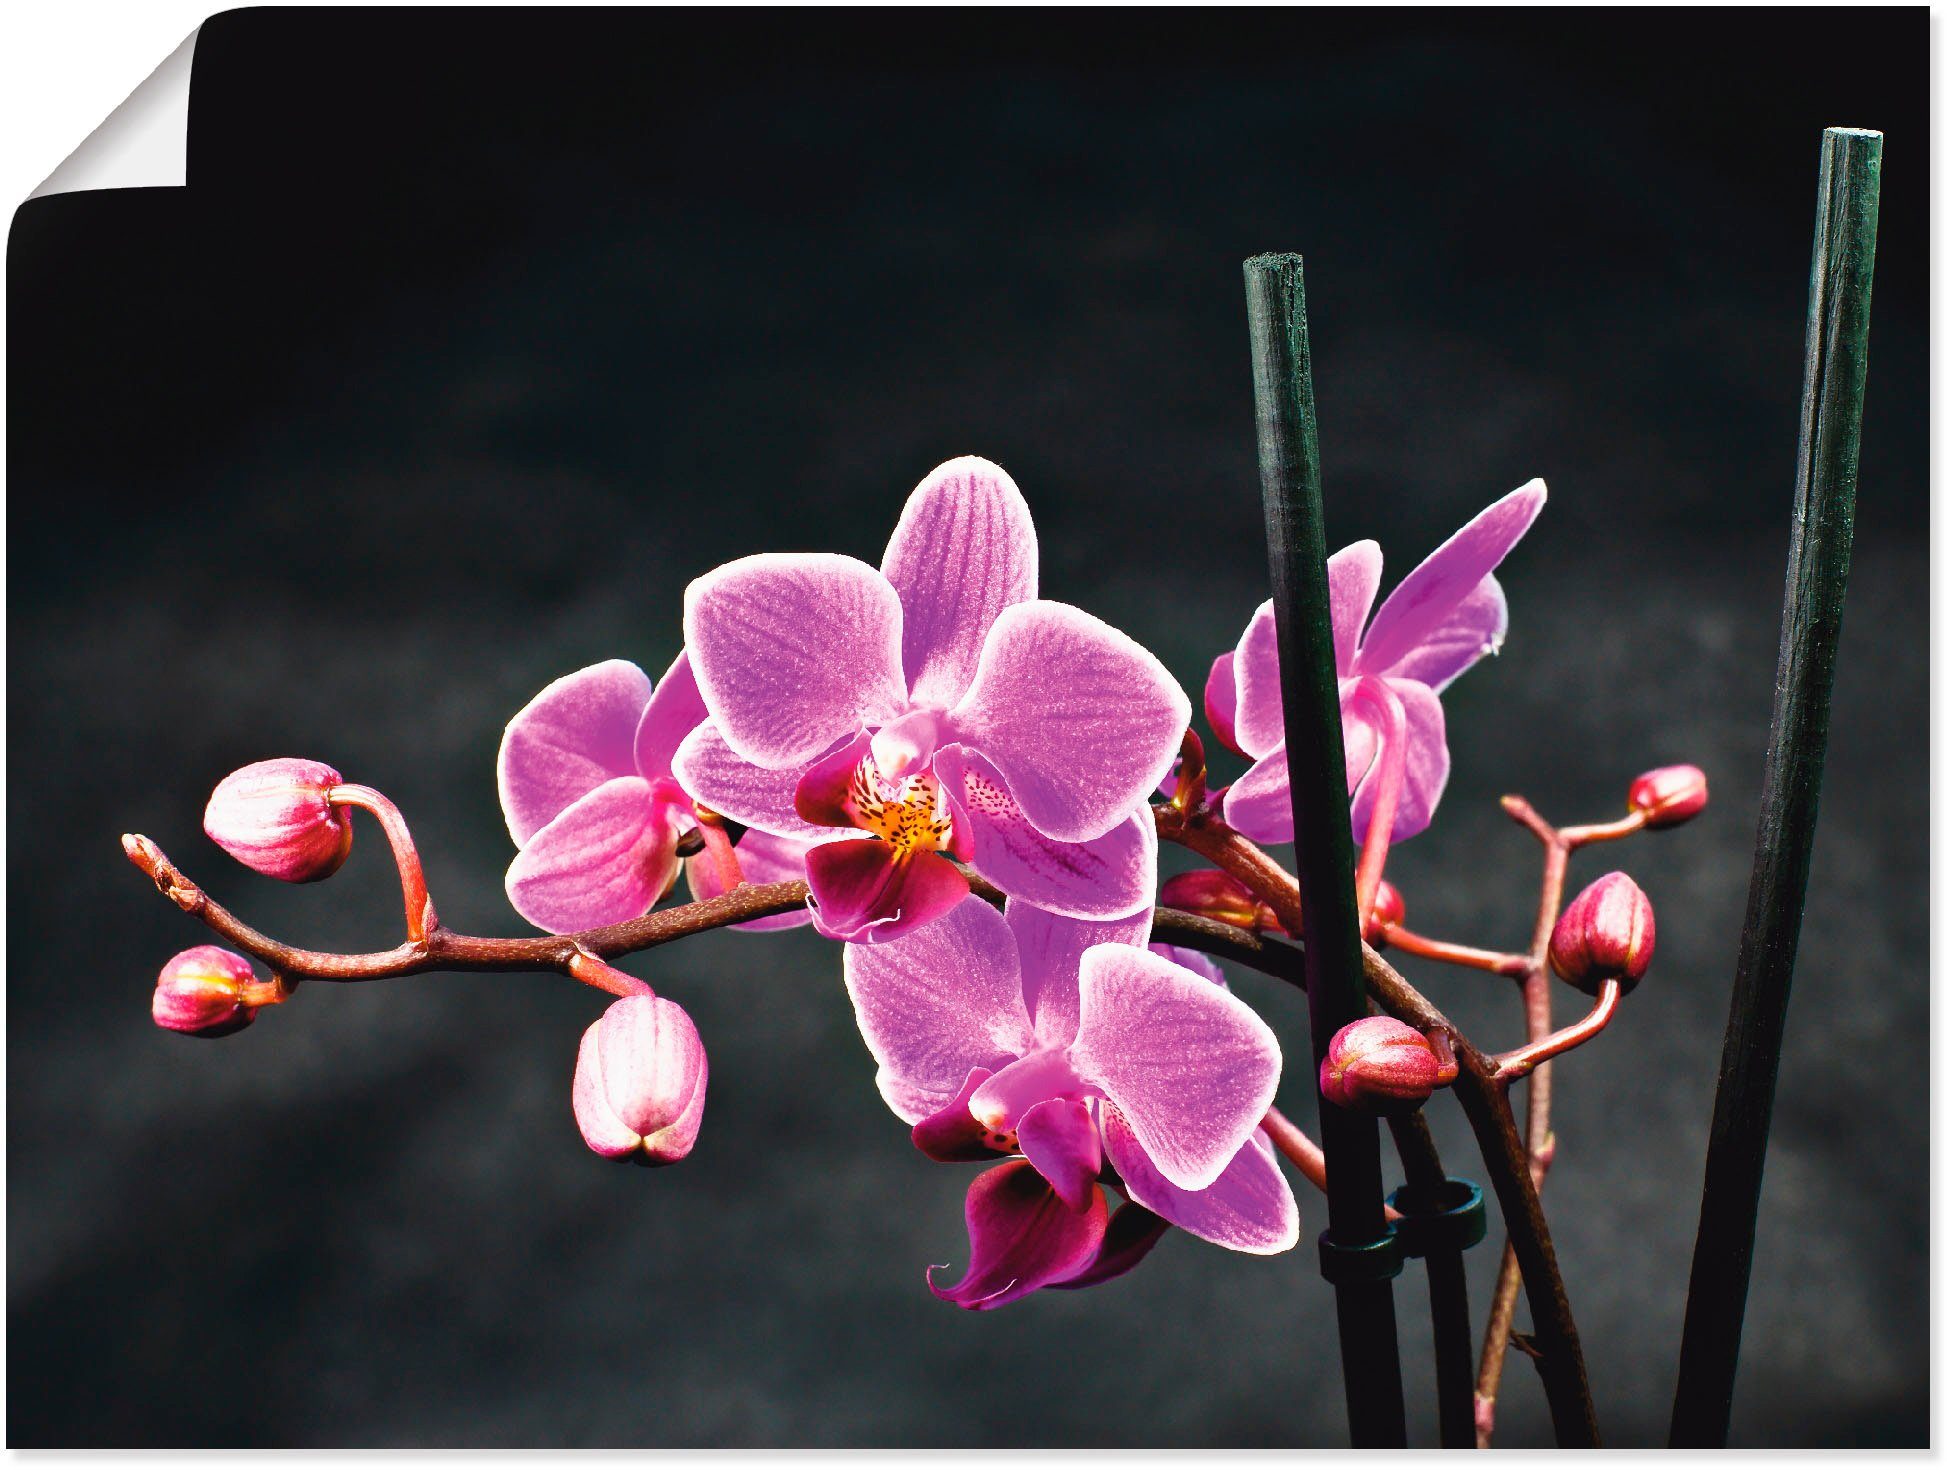 Artland Artprint Een orchidee voor een zwarte achtergrond in vele afmetingen & productsoorten -artprint op linnen, poster, muursticker / wandfolie ook geschikt voor de badkamer (1